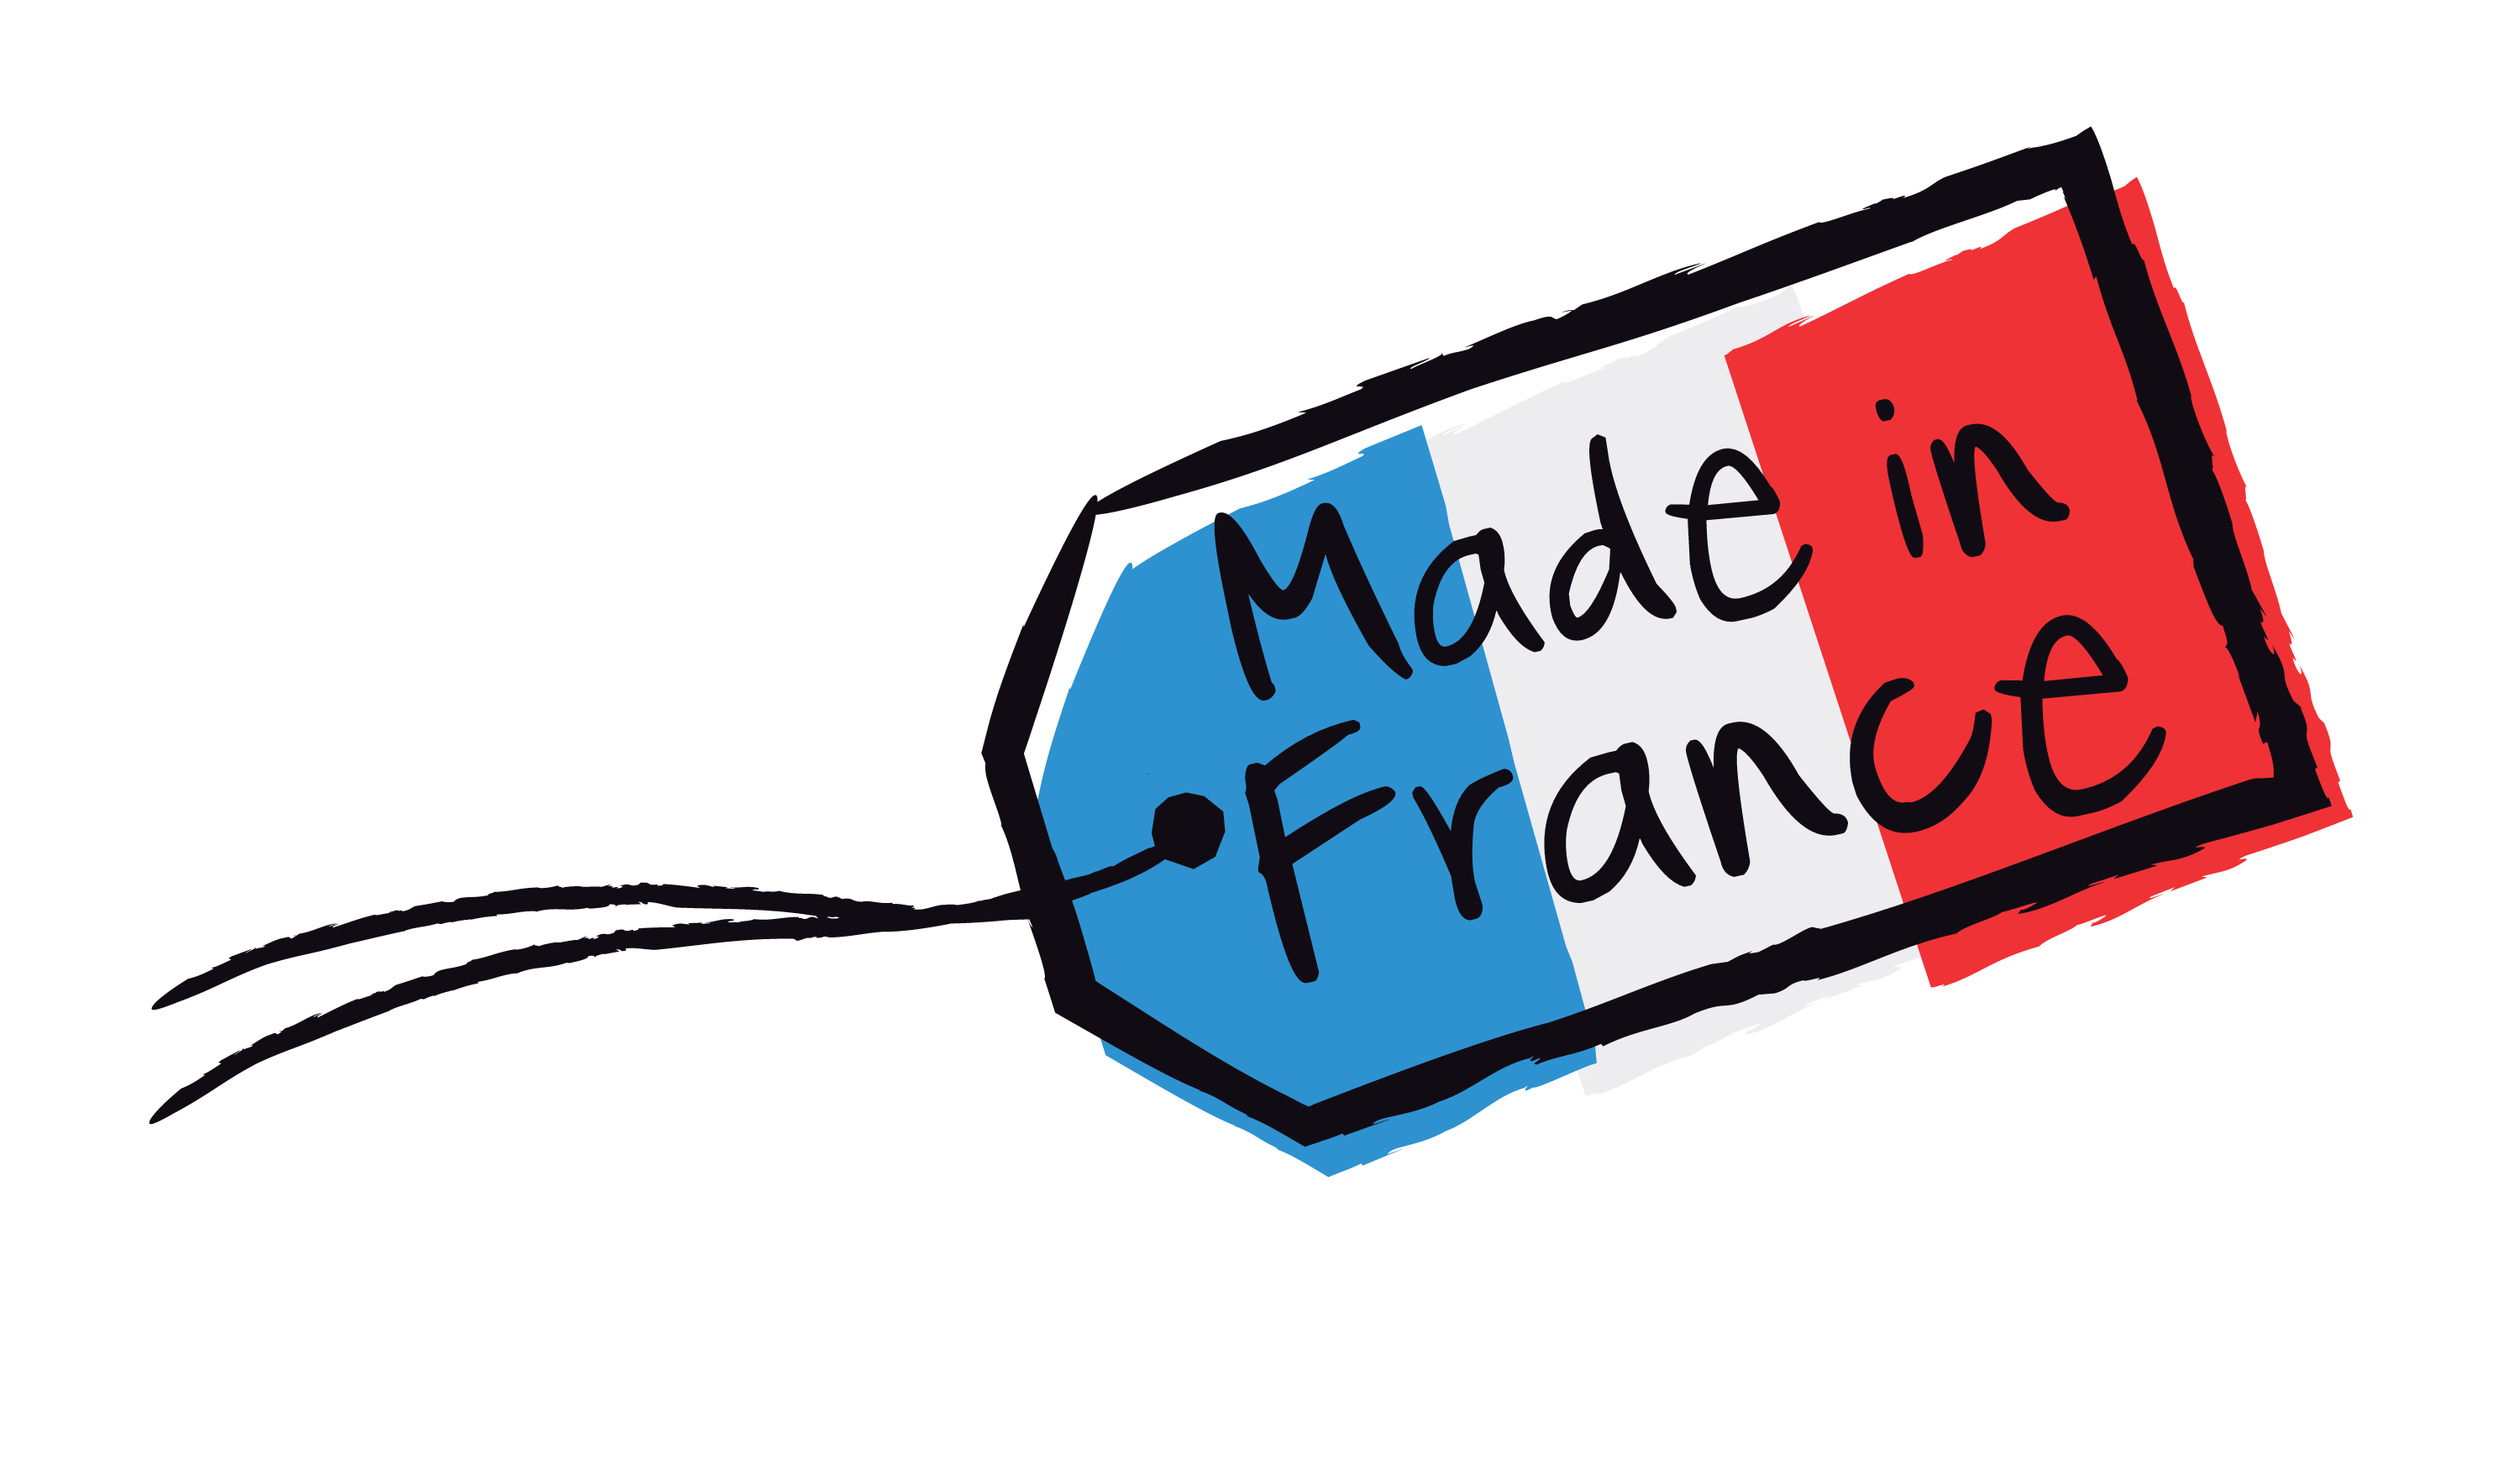 Produits Made in France : comment en être sûr ?